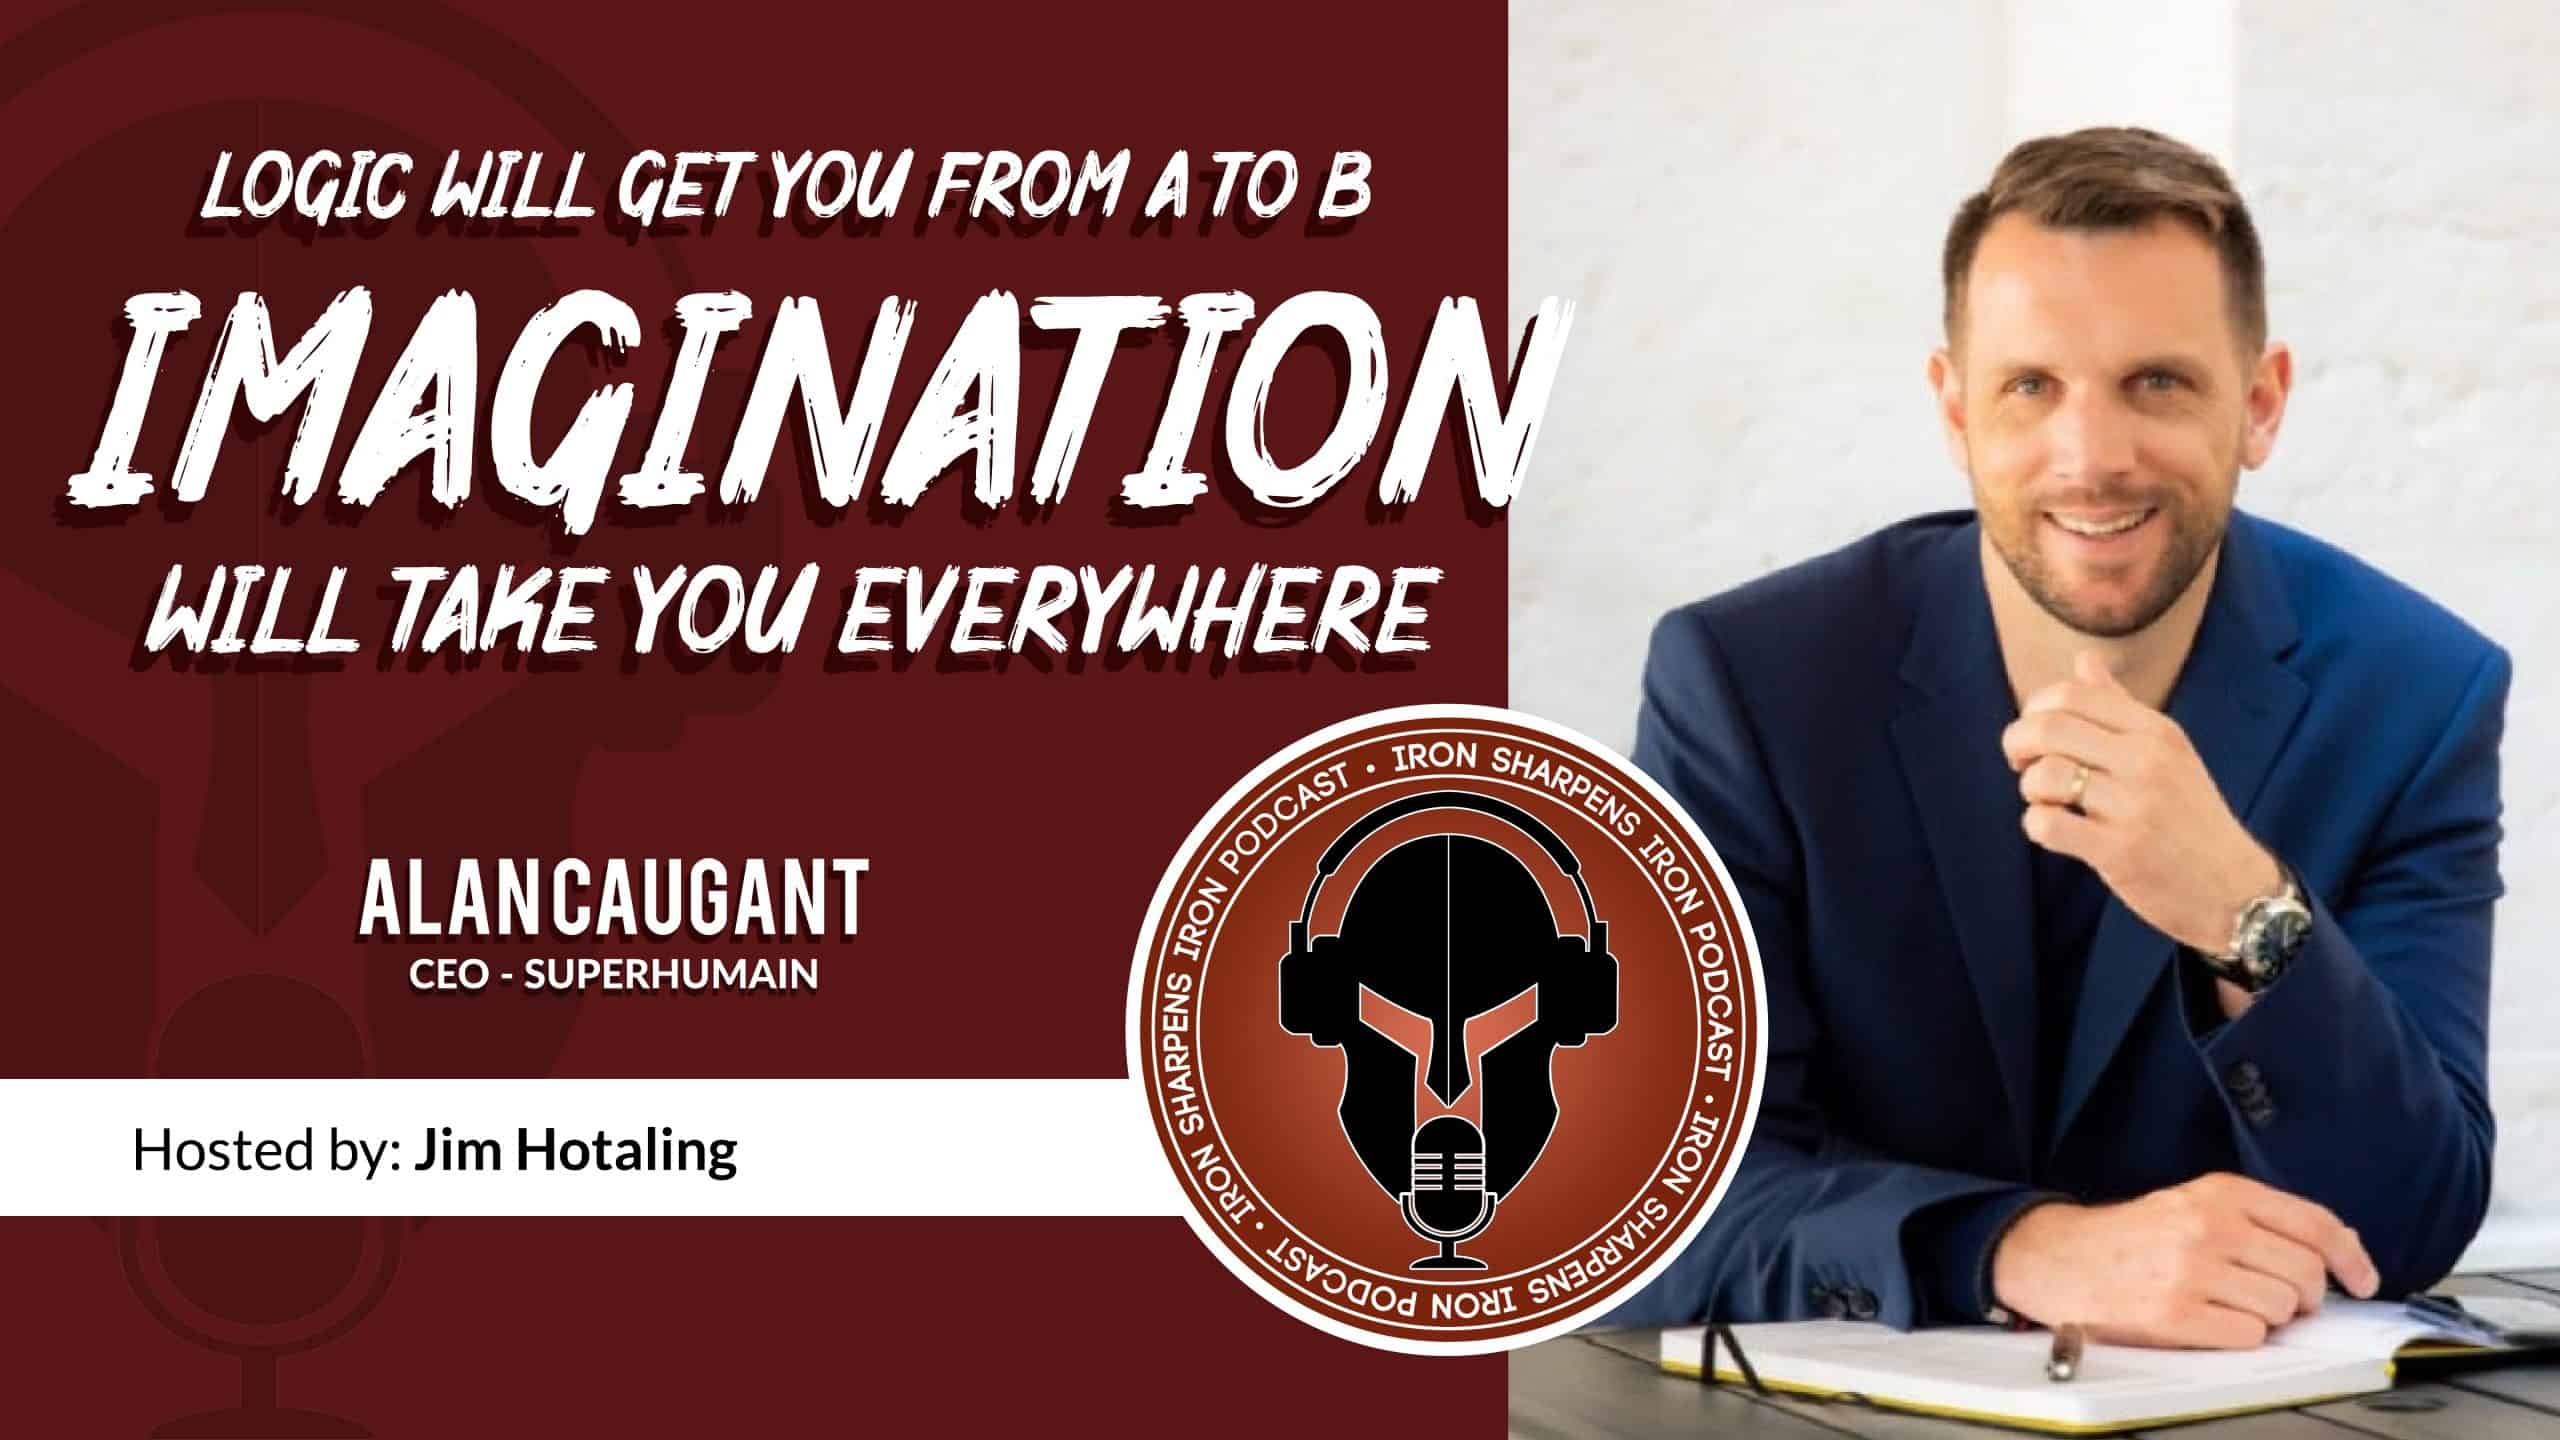 La logique vous mènera de A à B - L'imagination vous mènera partout avec Alan Caugant